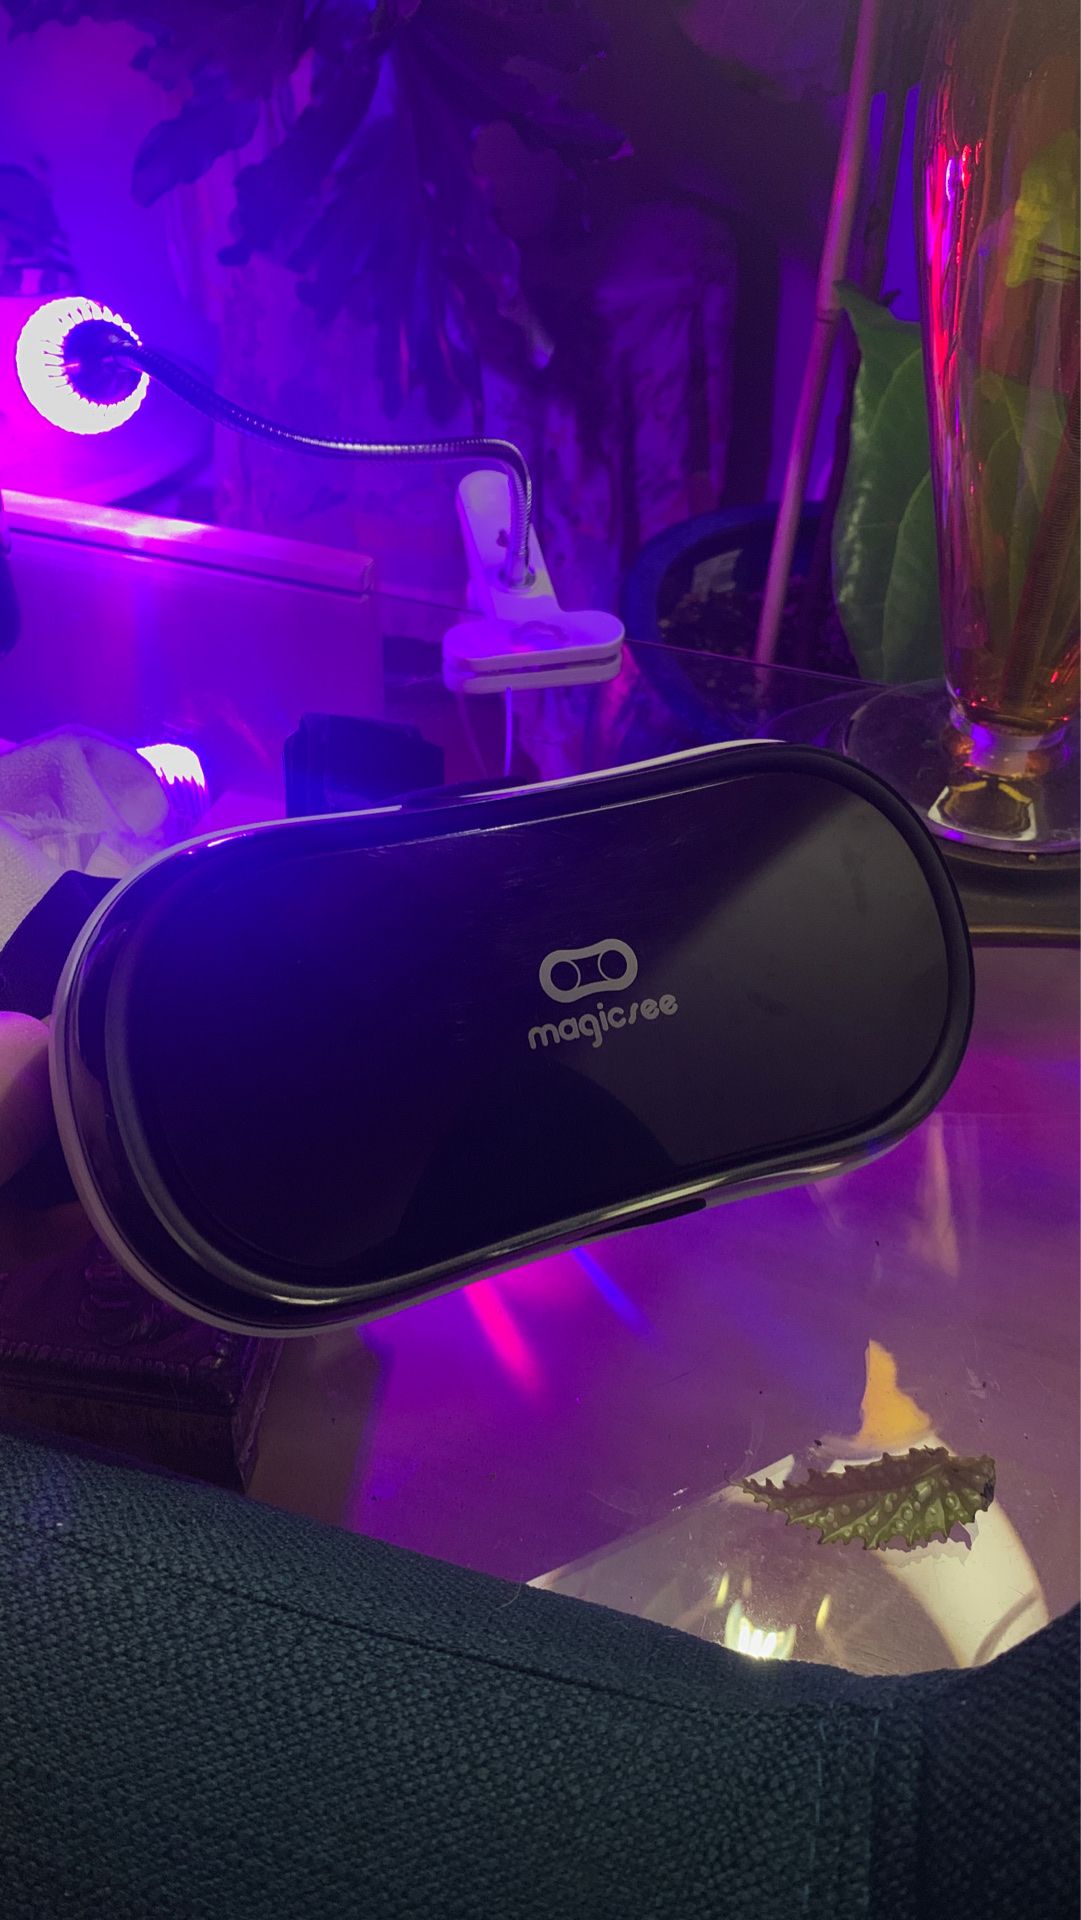 Magicsee VR headset